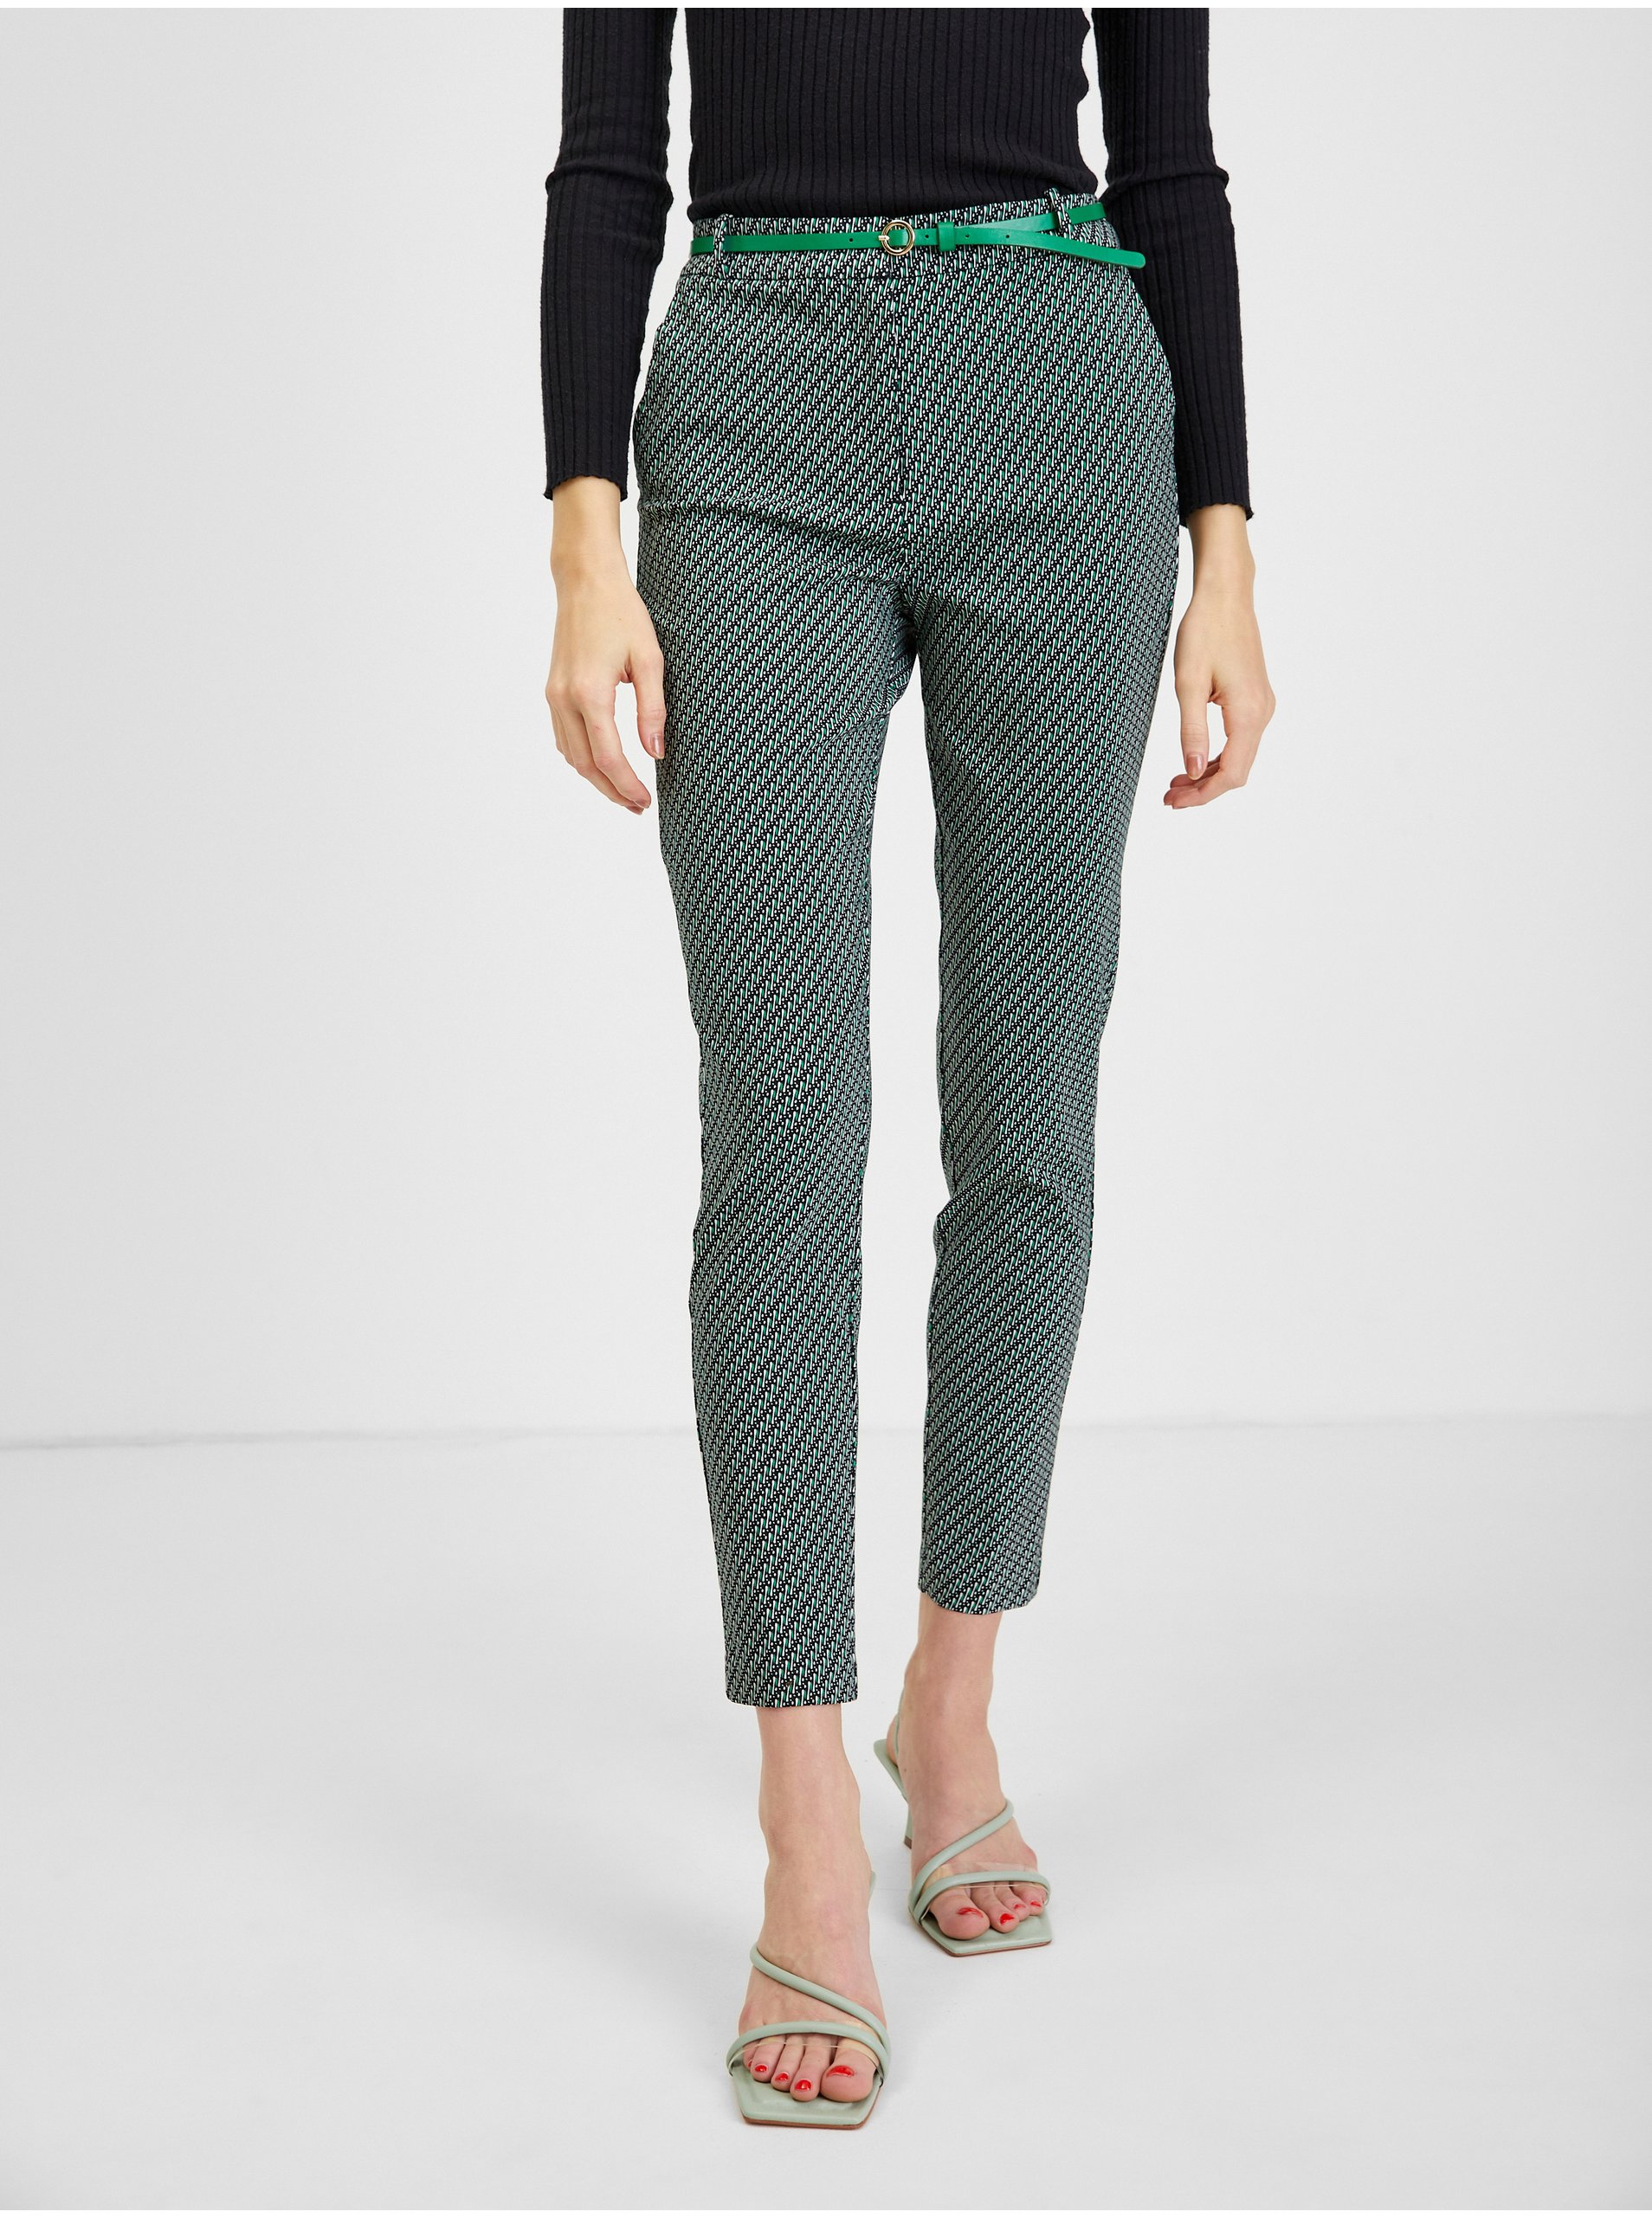 Lacno Elegantné nohavice pre ženy ORSAY - zelená, čierna